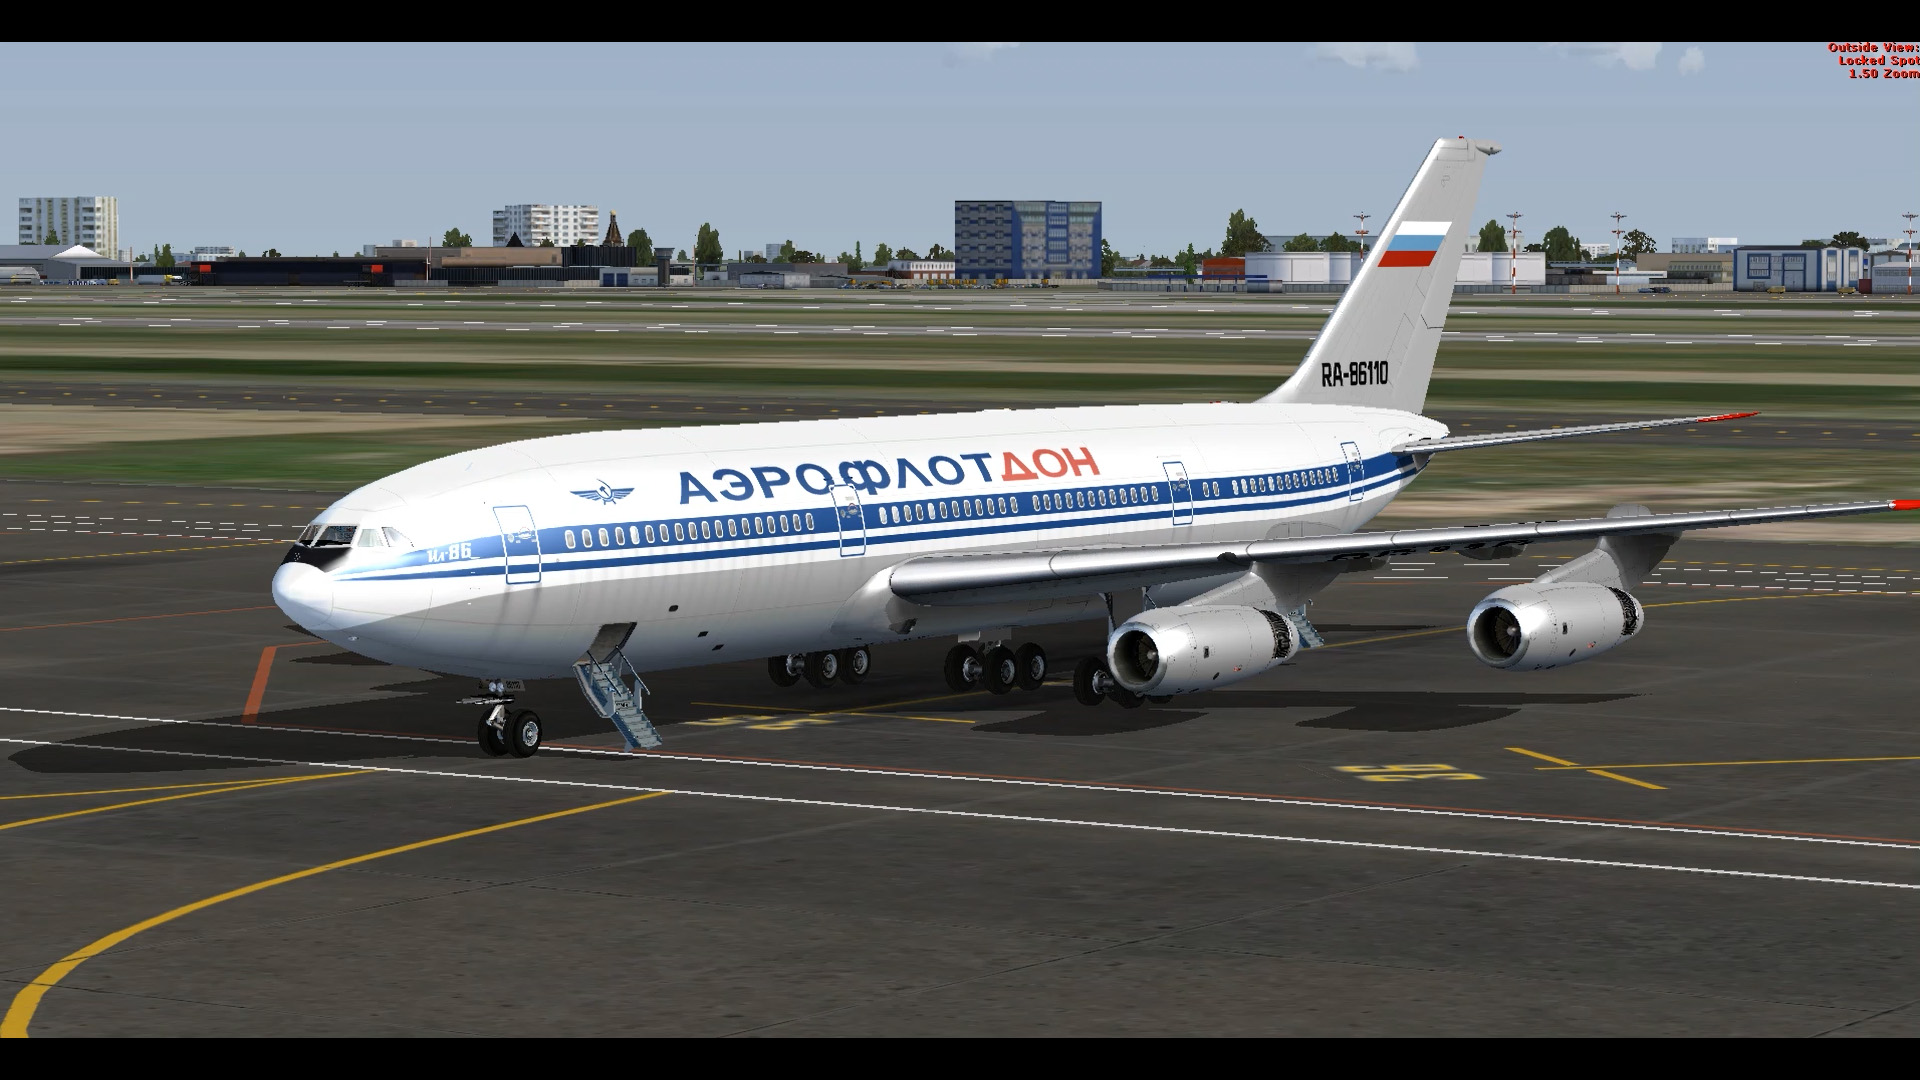 [空难模拟]普尔科沃航空9560航班-9606 